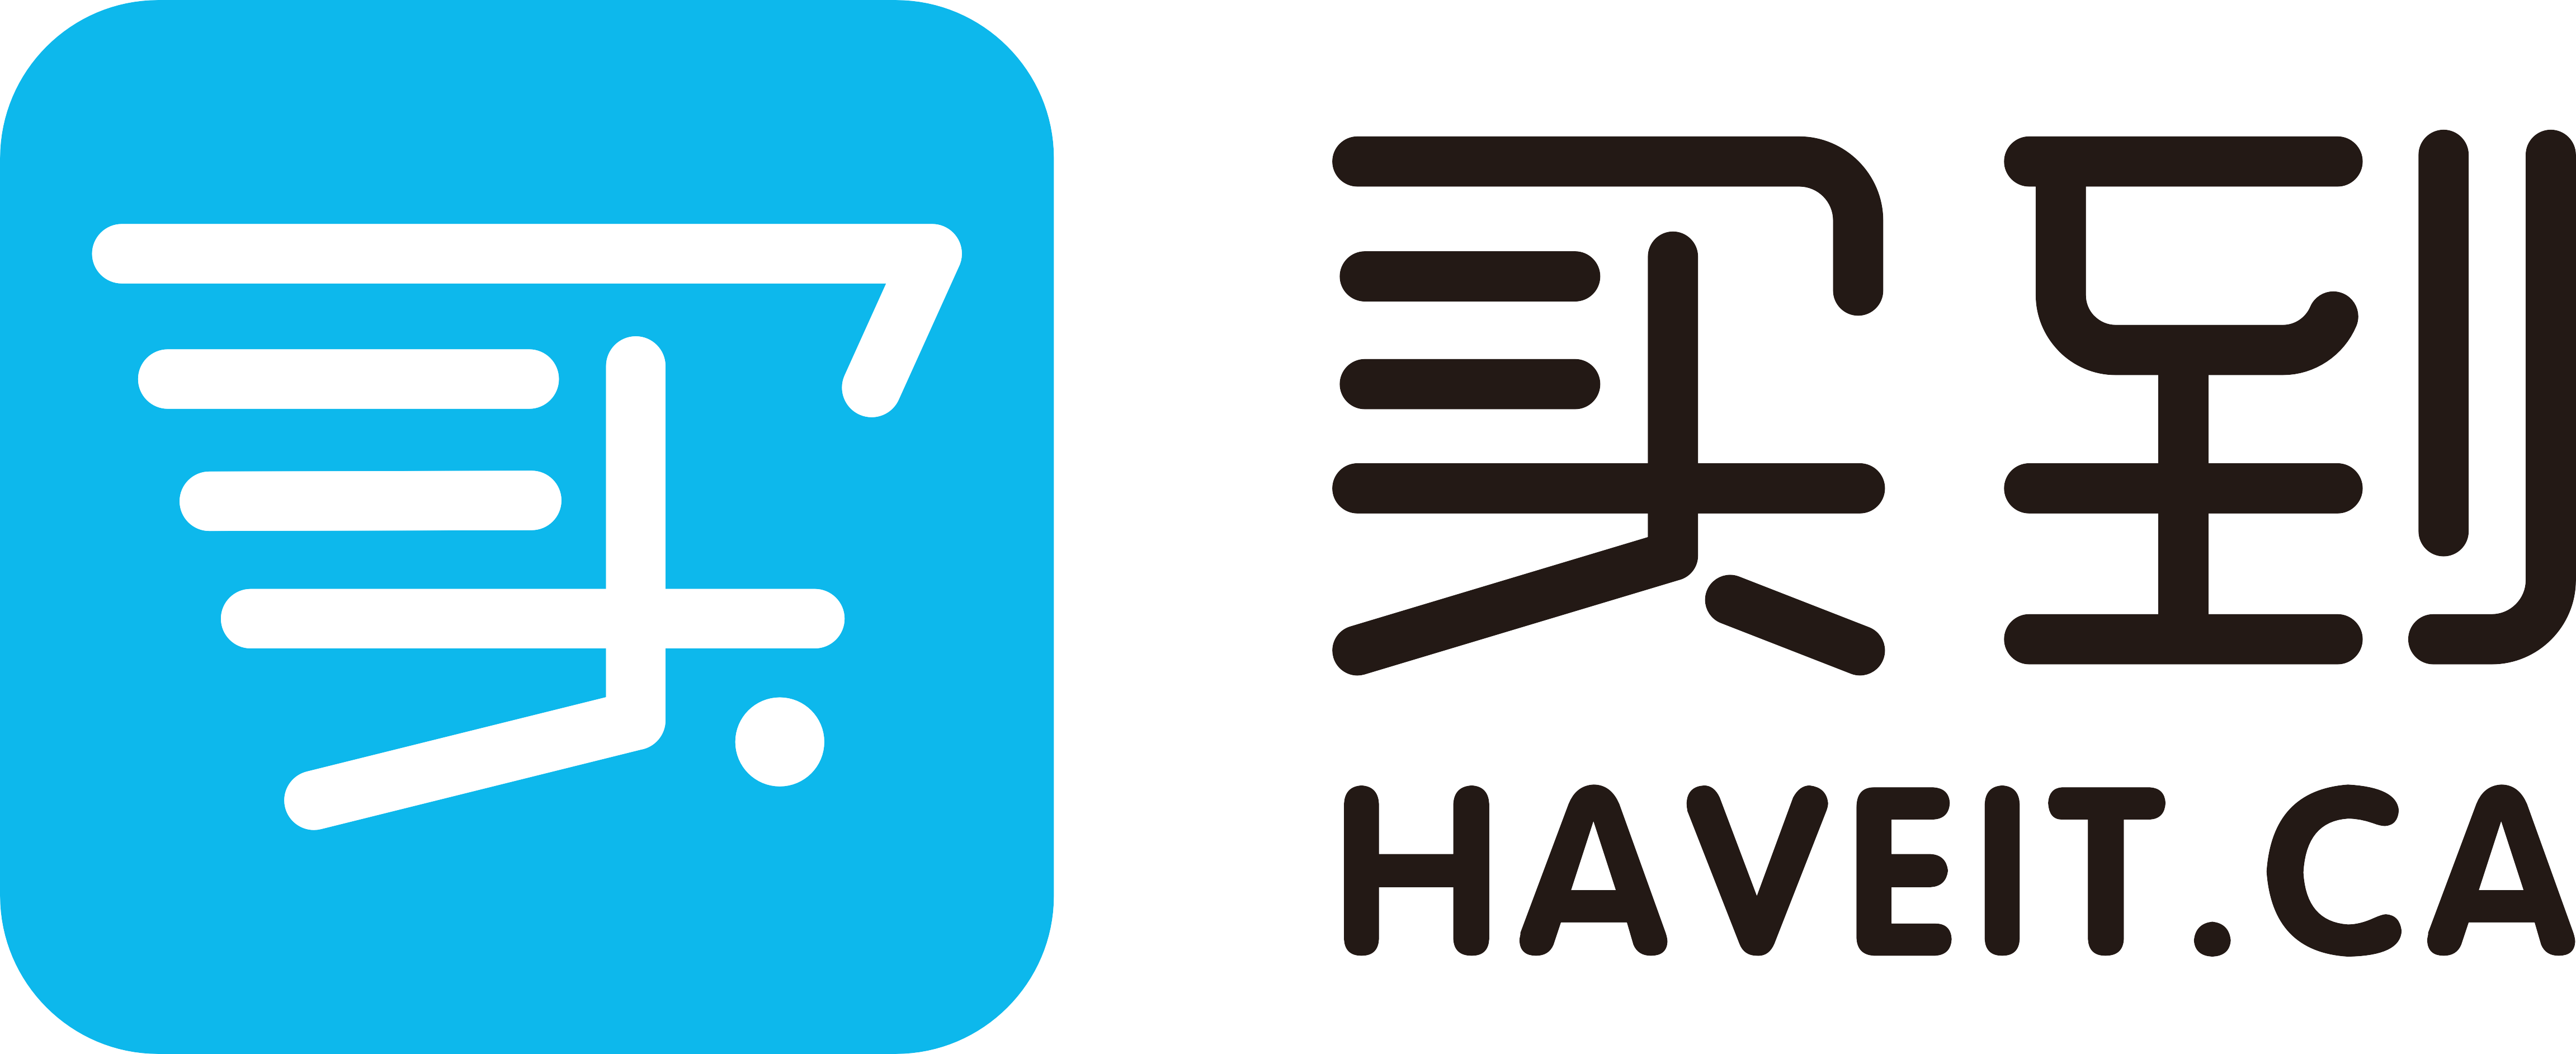 温哥华买到网haveit - Ca - 温哥华买到网 Haveit.ca (4606x1884)